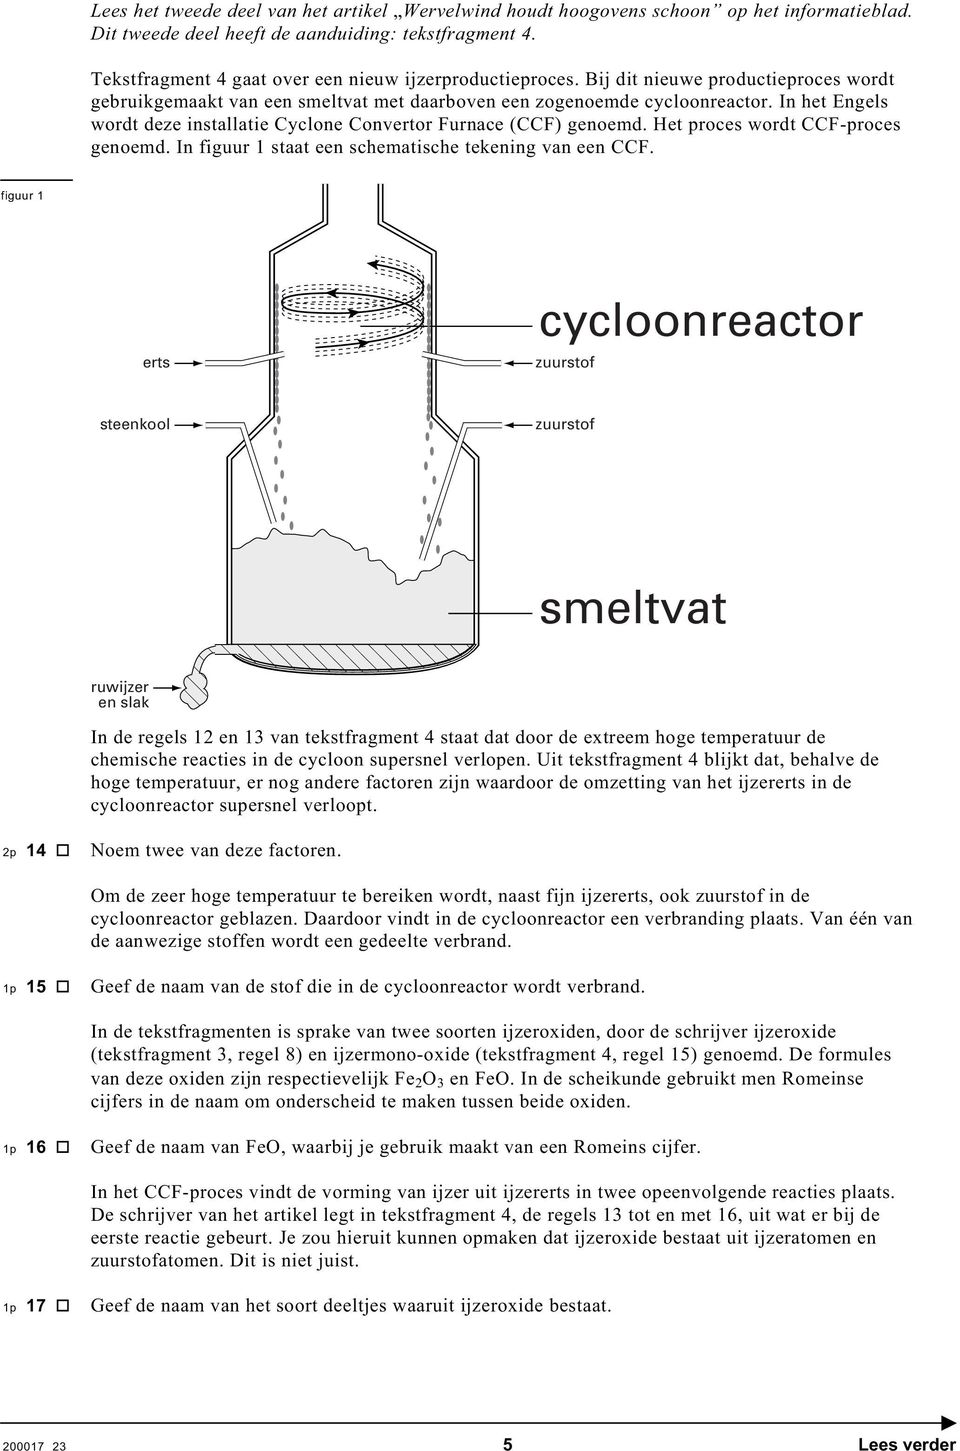 In het Engels wordt deze installatie yclone onvertor urnace () genoemd. et proces wordt -proces genoemd. In figuur 1 staat een schematische tekening van een.